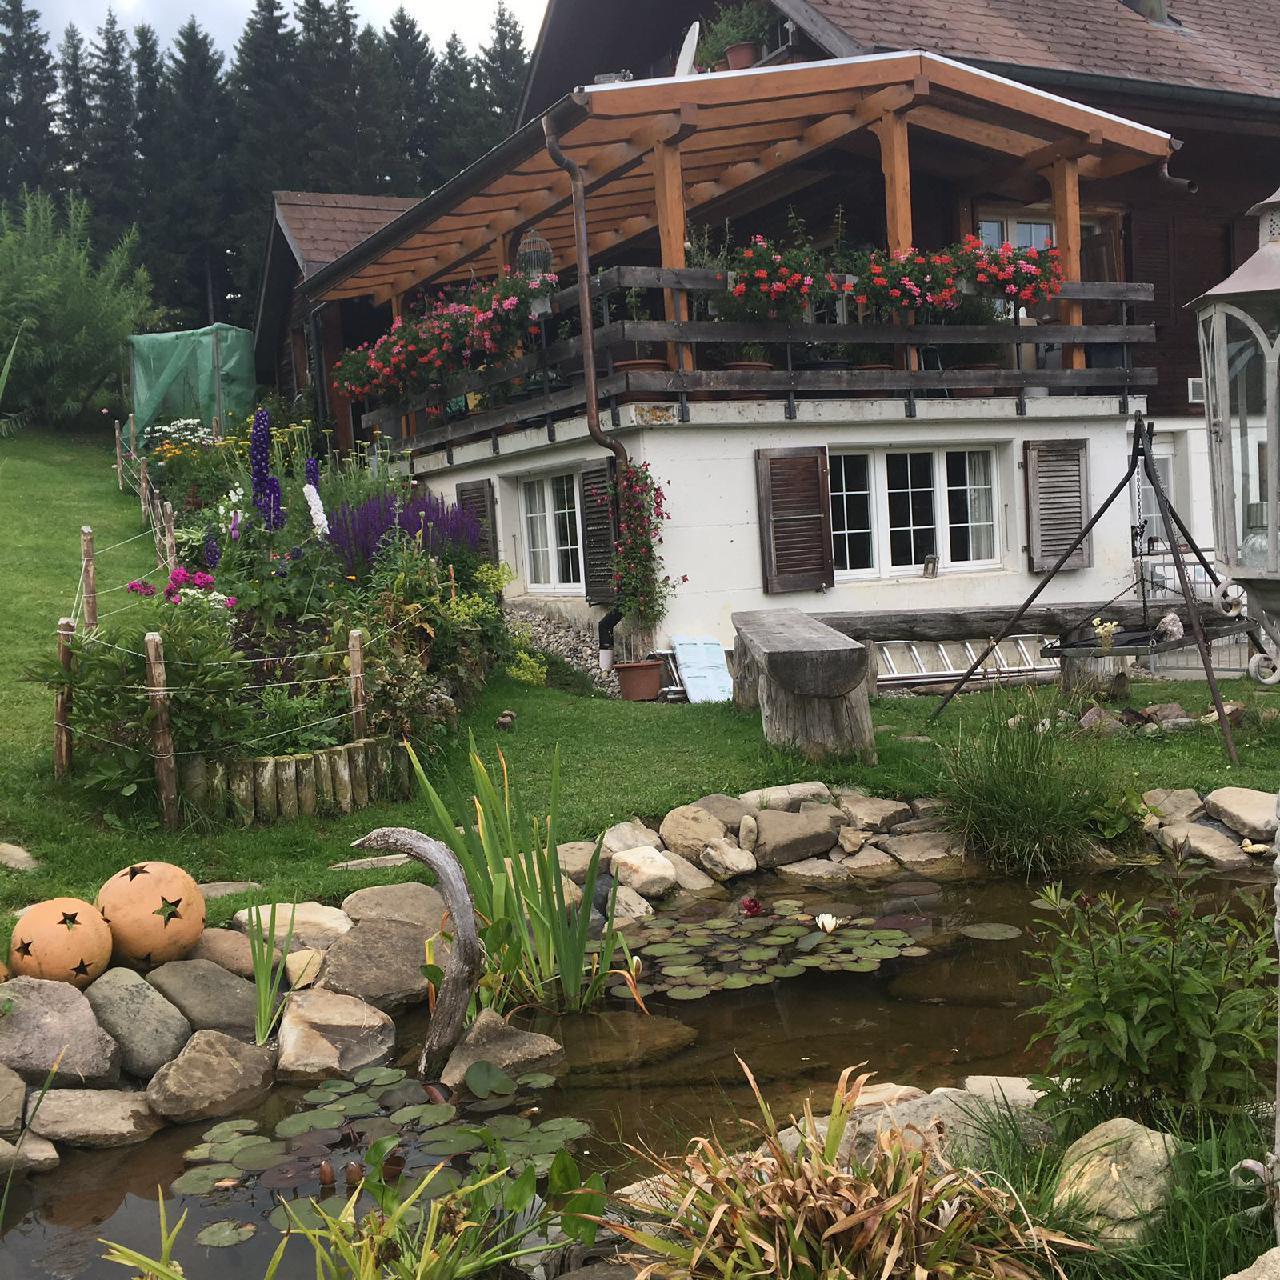 Charmante Ferienwohnung mitten in der Natur Ferienhaus in der Schweiz